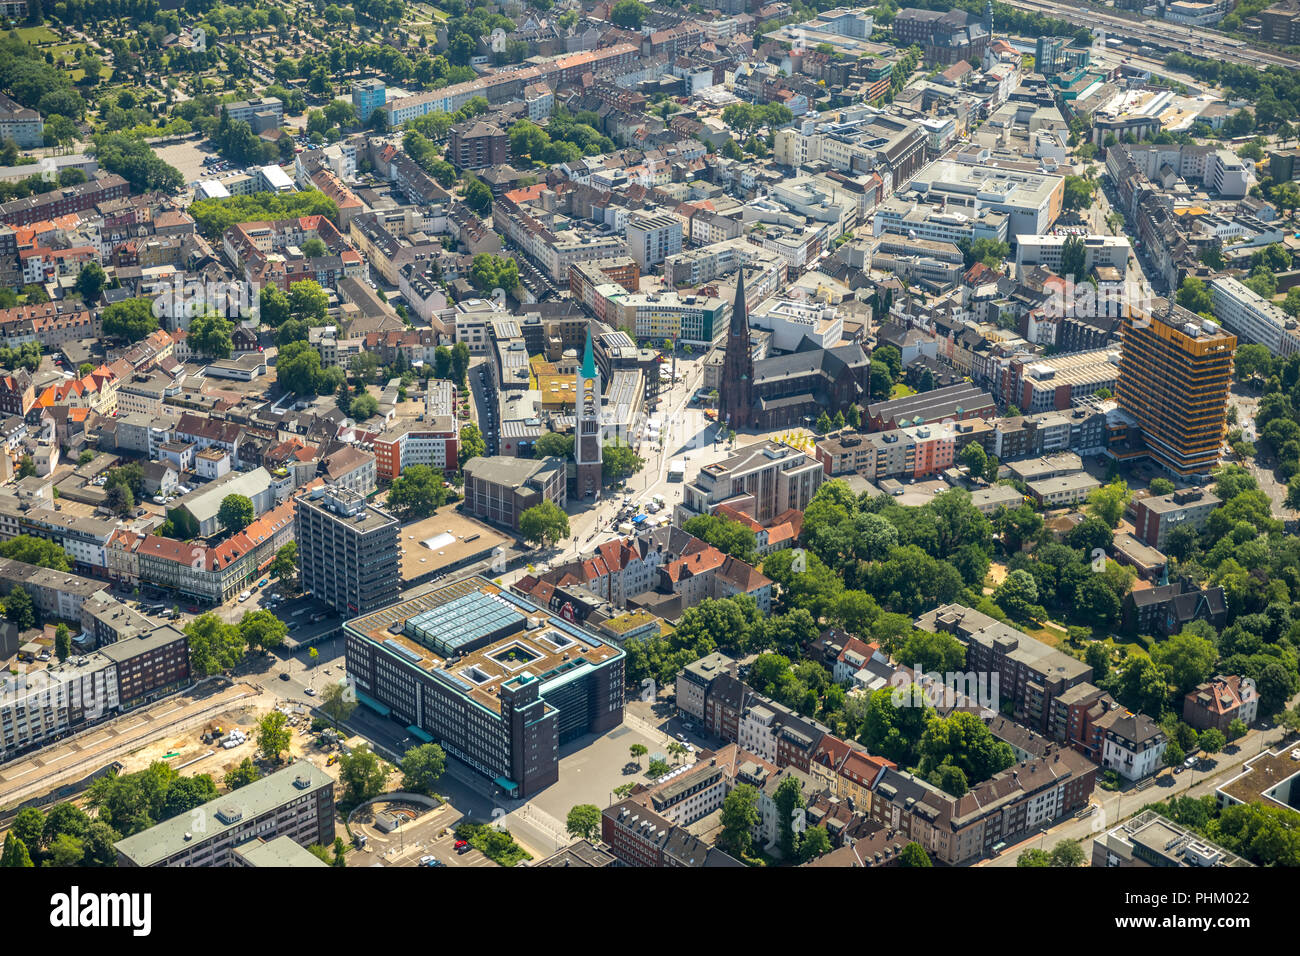 Vista aerea, centro principale Gelsenkirchen-City, panoramica del centro citta', Centro commerciale, Gelsenkirchen, zona della Ruhr, Renania settentrionale-Vestfalia, Germania, DE Foto Stock